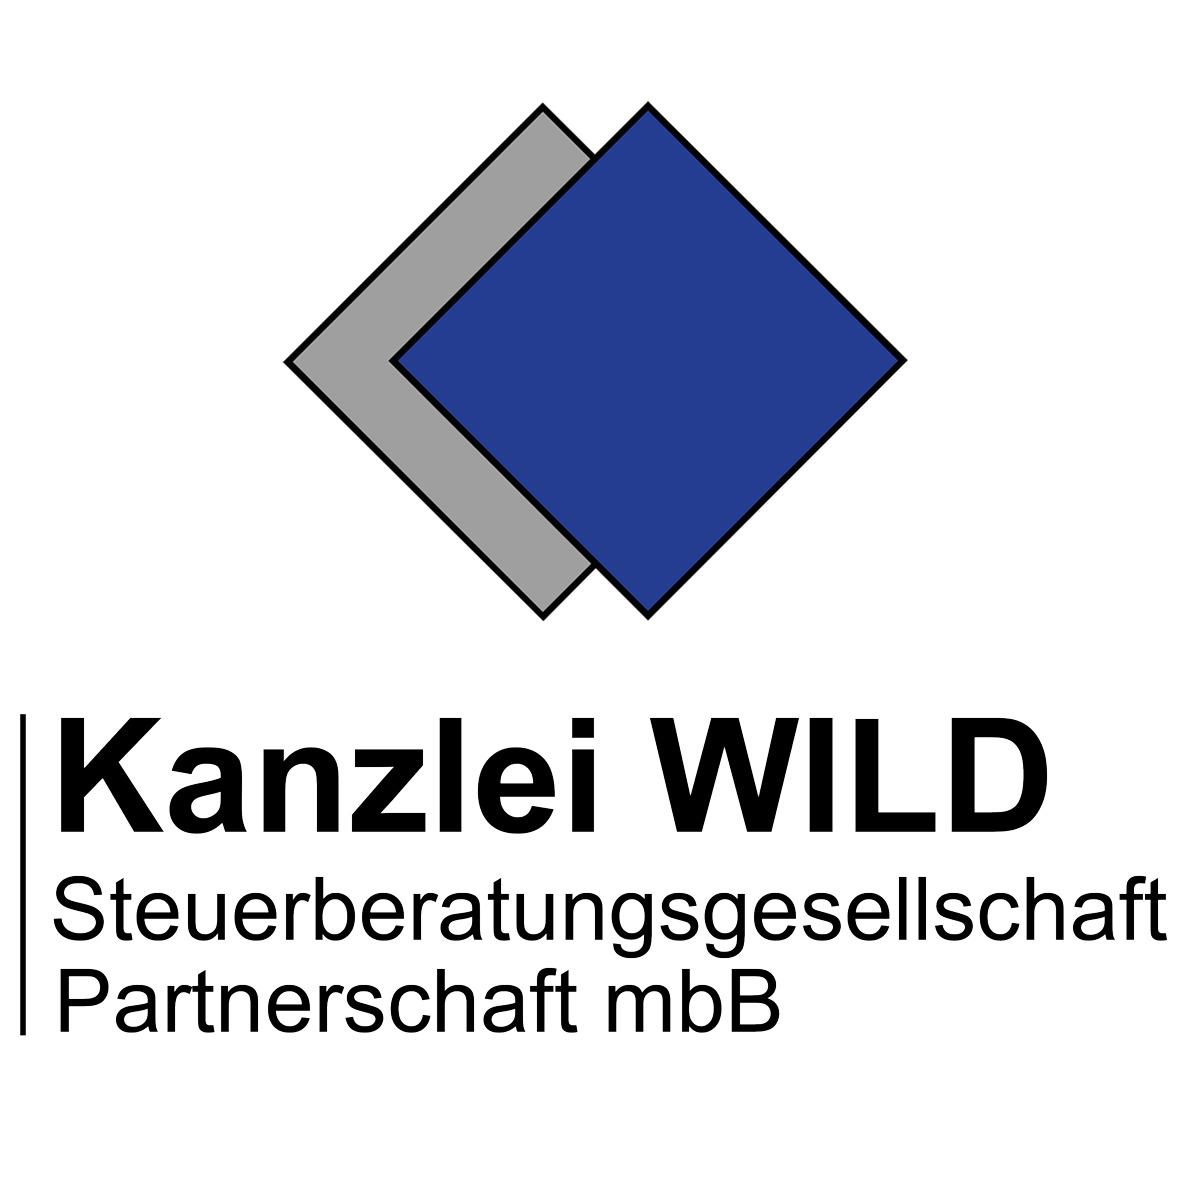 Kanzlei Wild Steuerberatungsgesellschaft Partnerschaft mbB in Rastatt - Logo